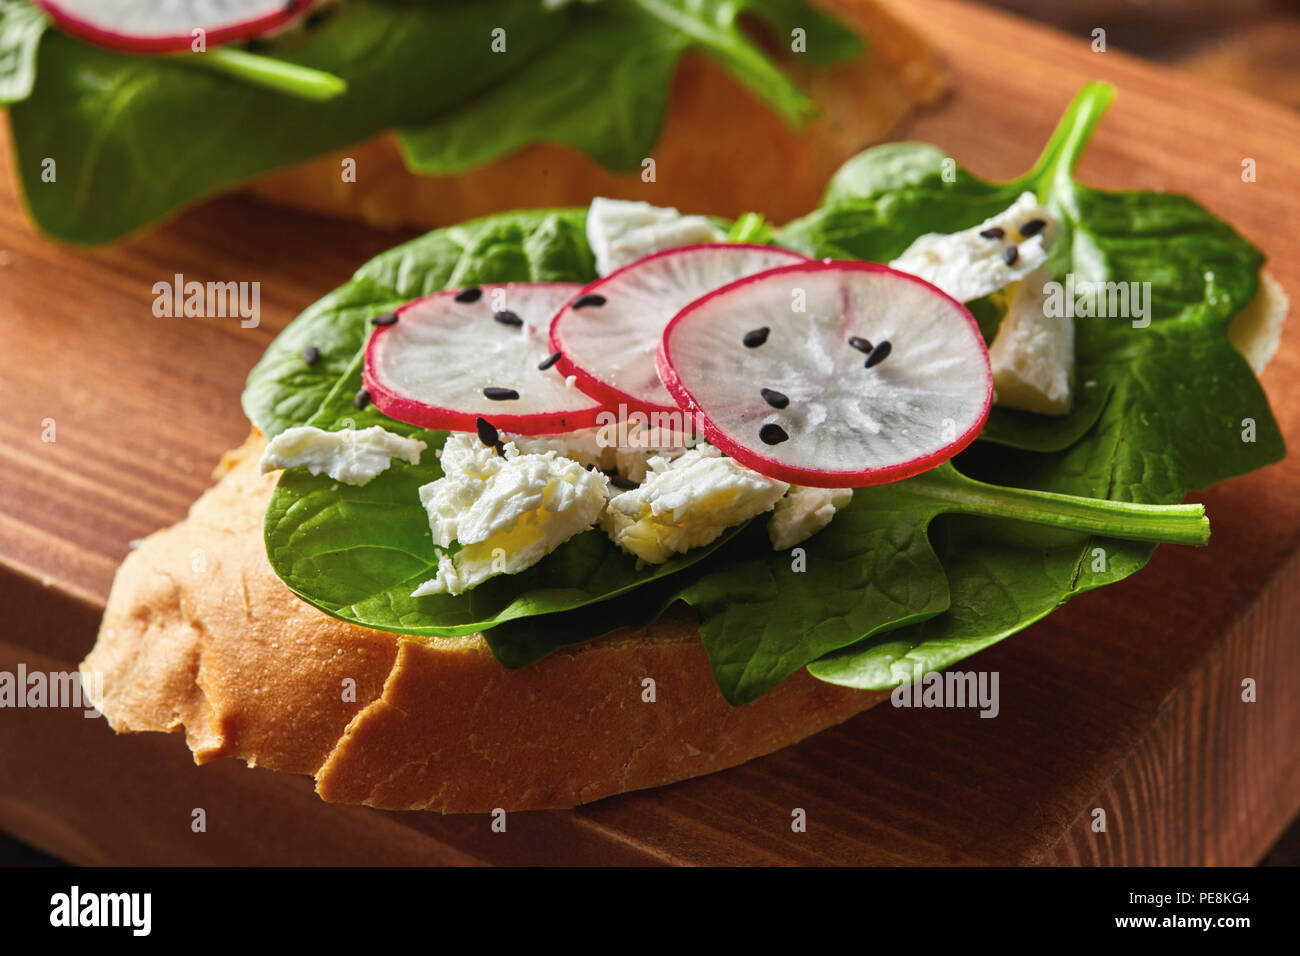 Sandwichs sains lumière avec du pain toasts, fromage doux et des radis, des épinards biologiques recueillies sur une planche de bois. Banque D'Images